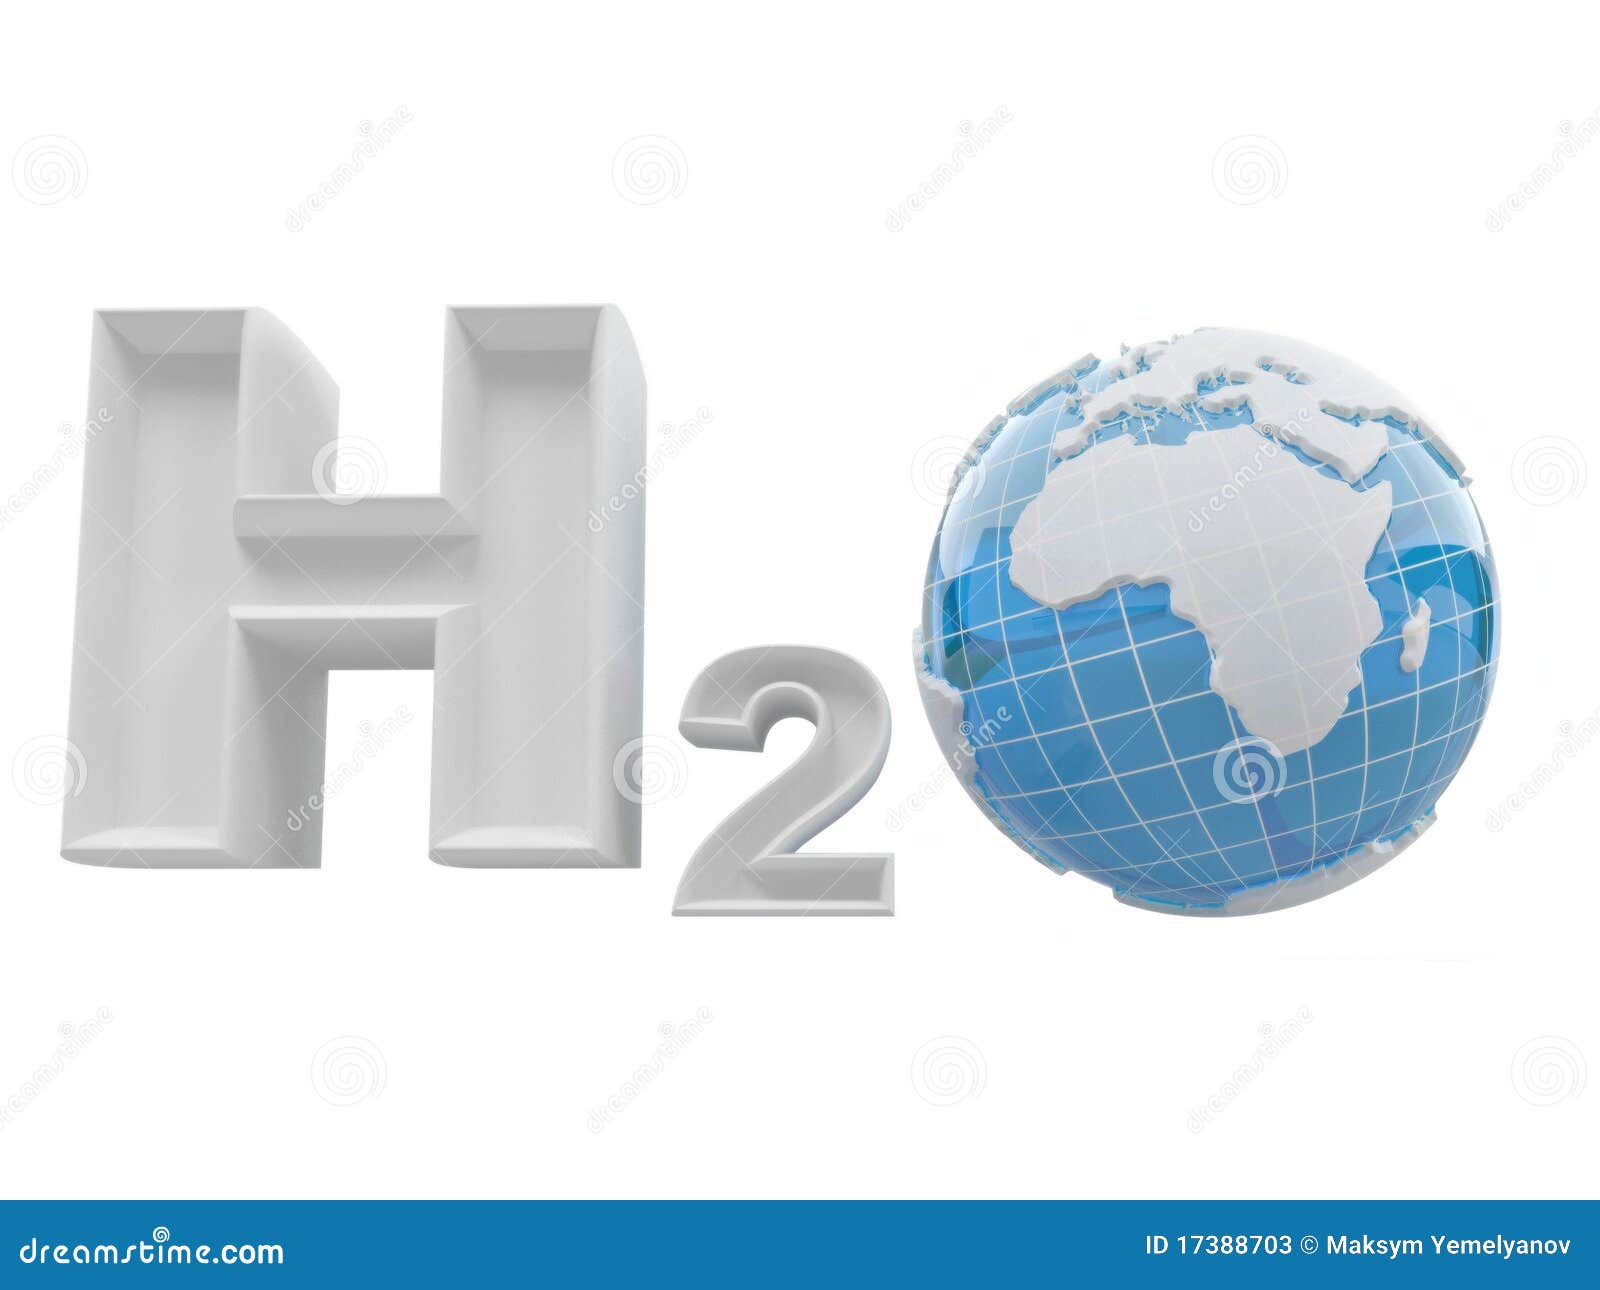 h2o. formula of water.